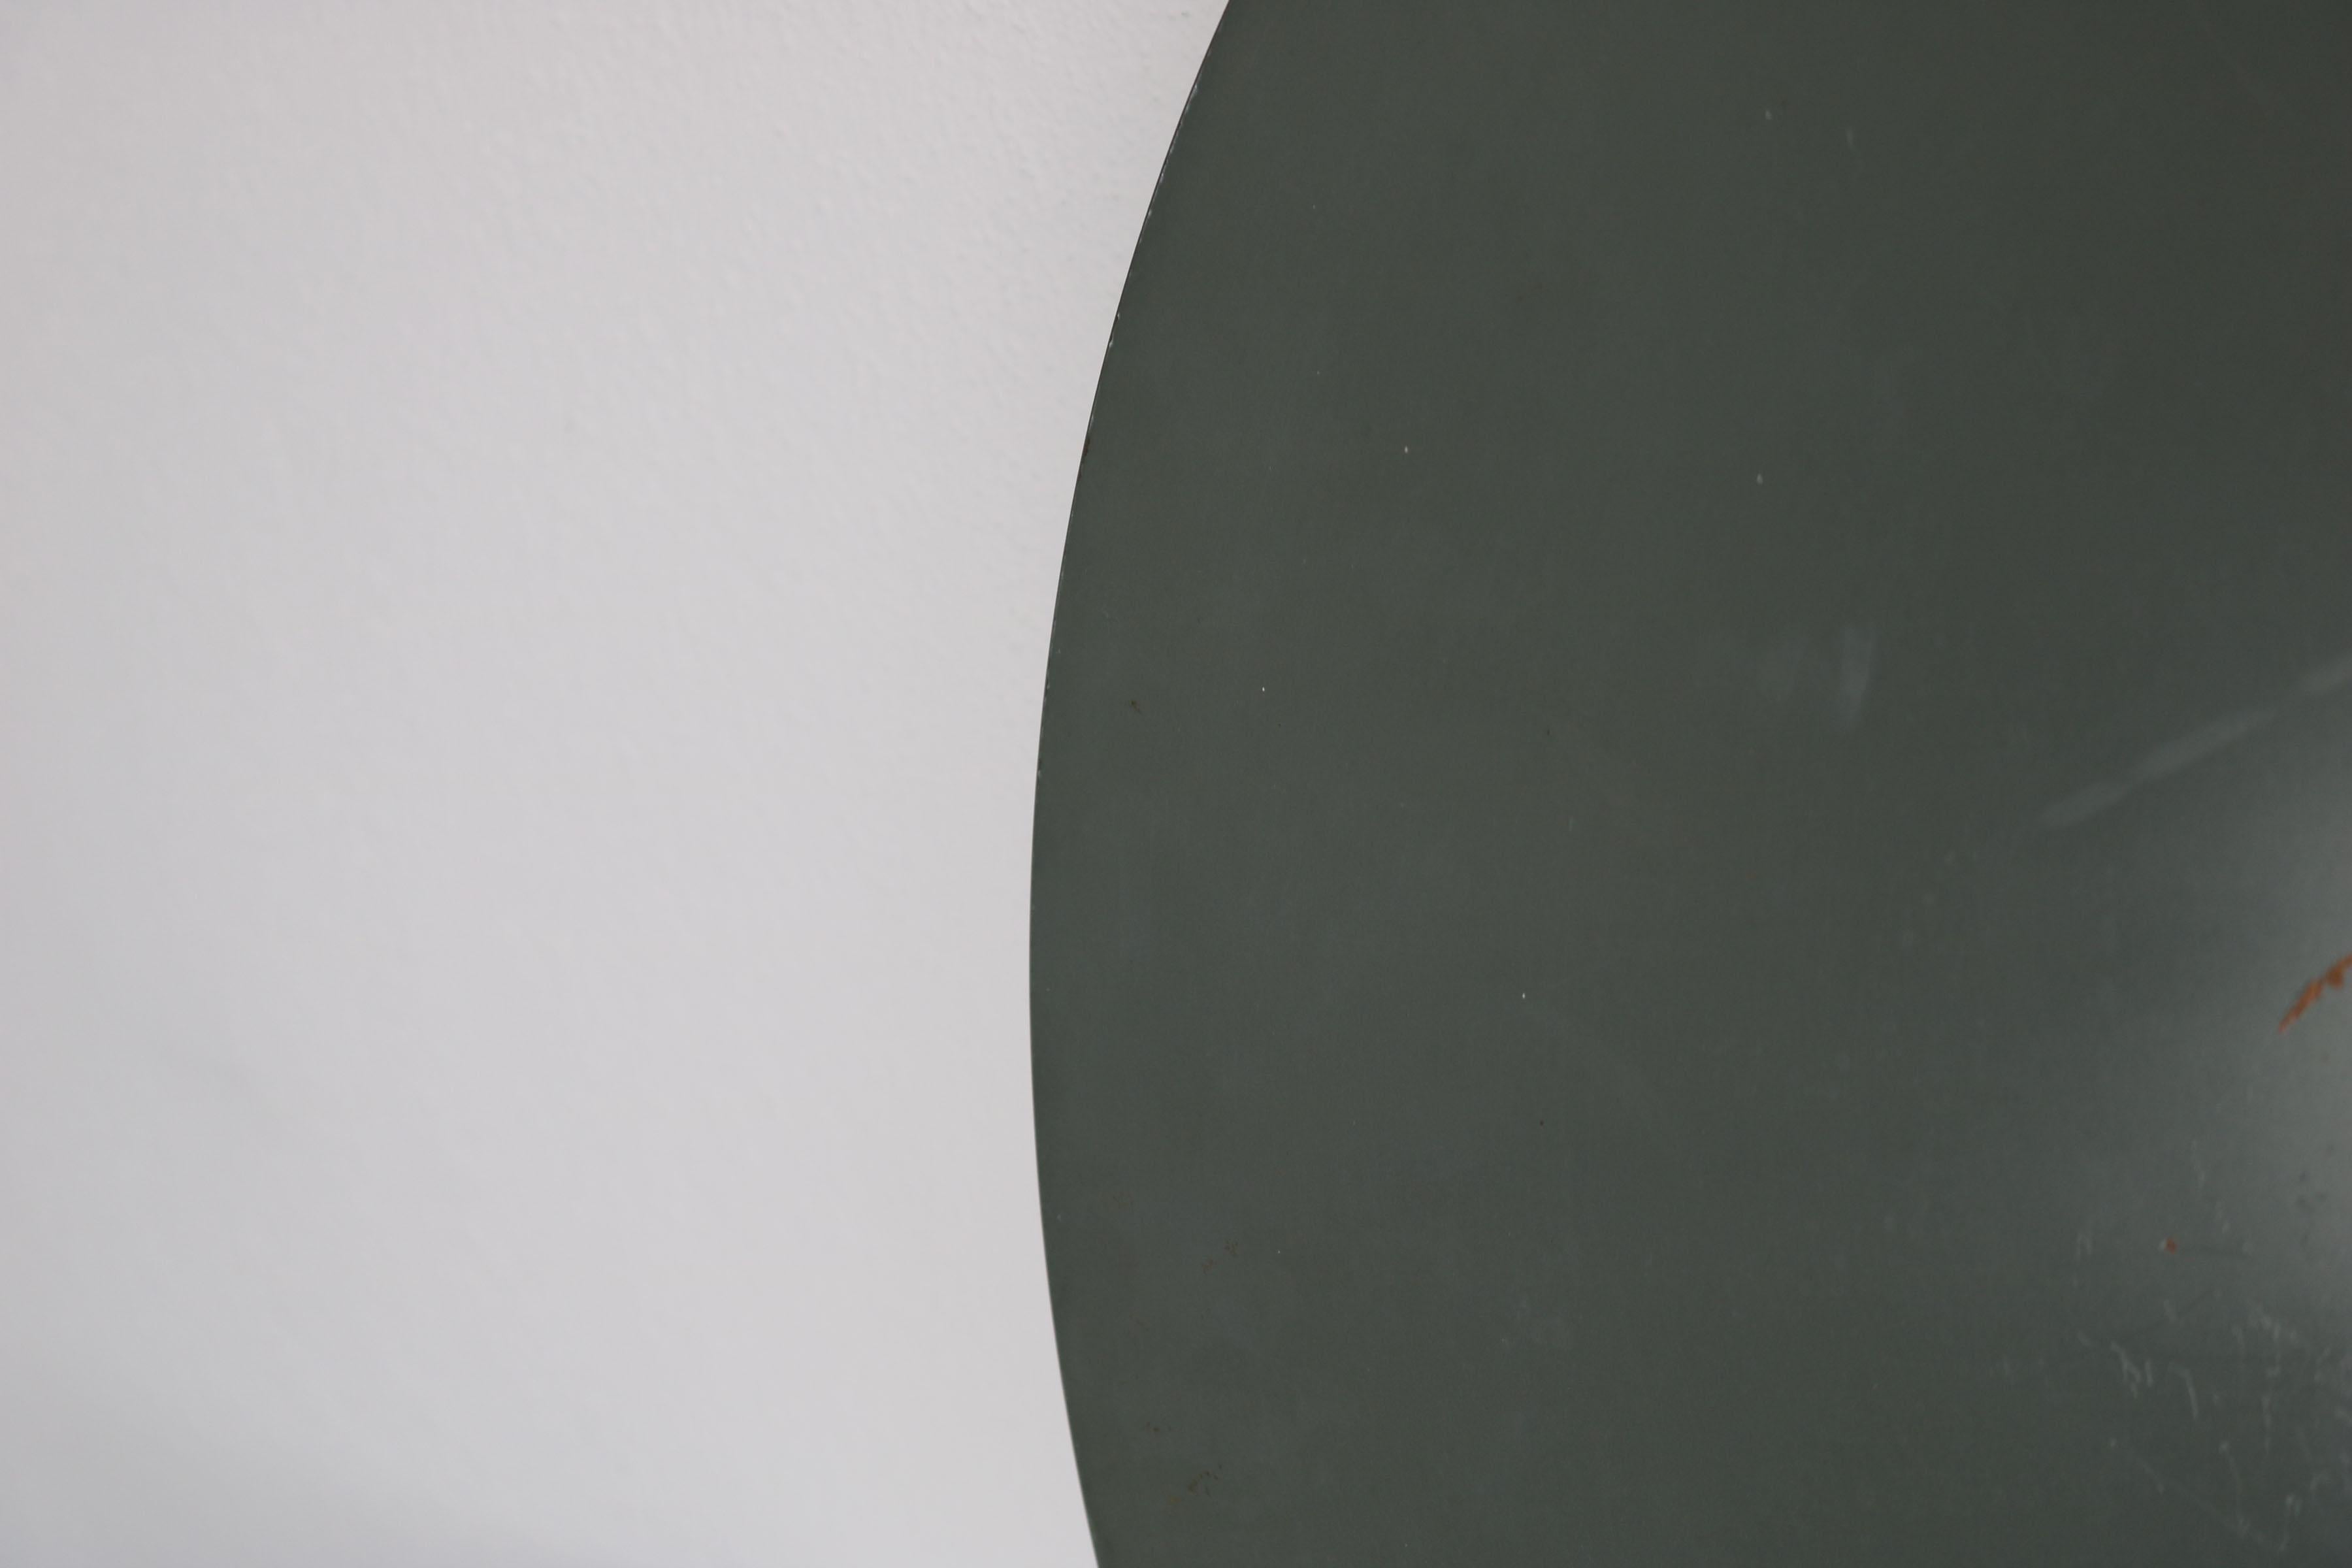 Round Italian Twotone Mirror, Design: Antonio Lupi by Cristal Luxor, 1960s For Sale 8